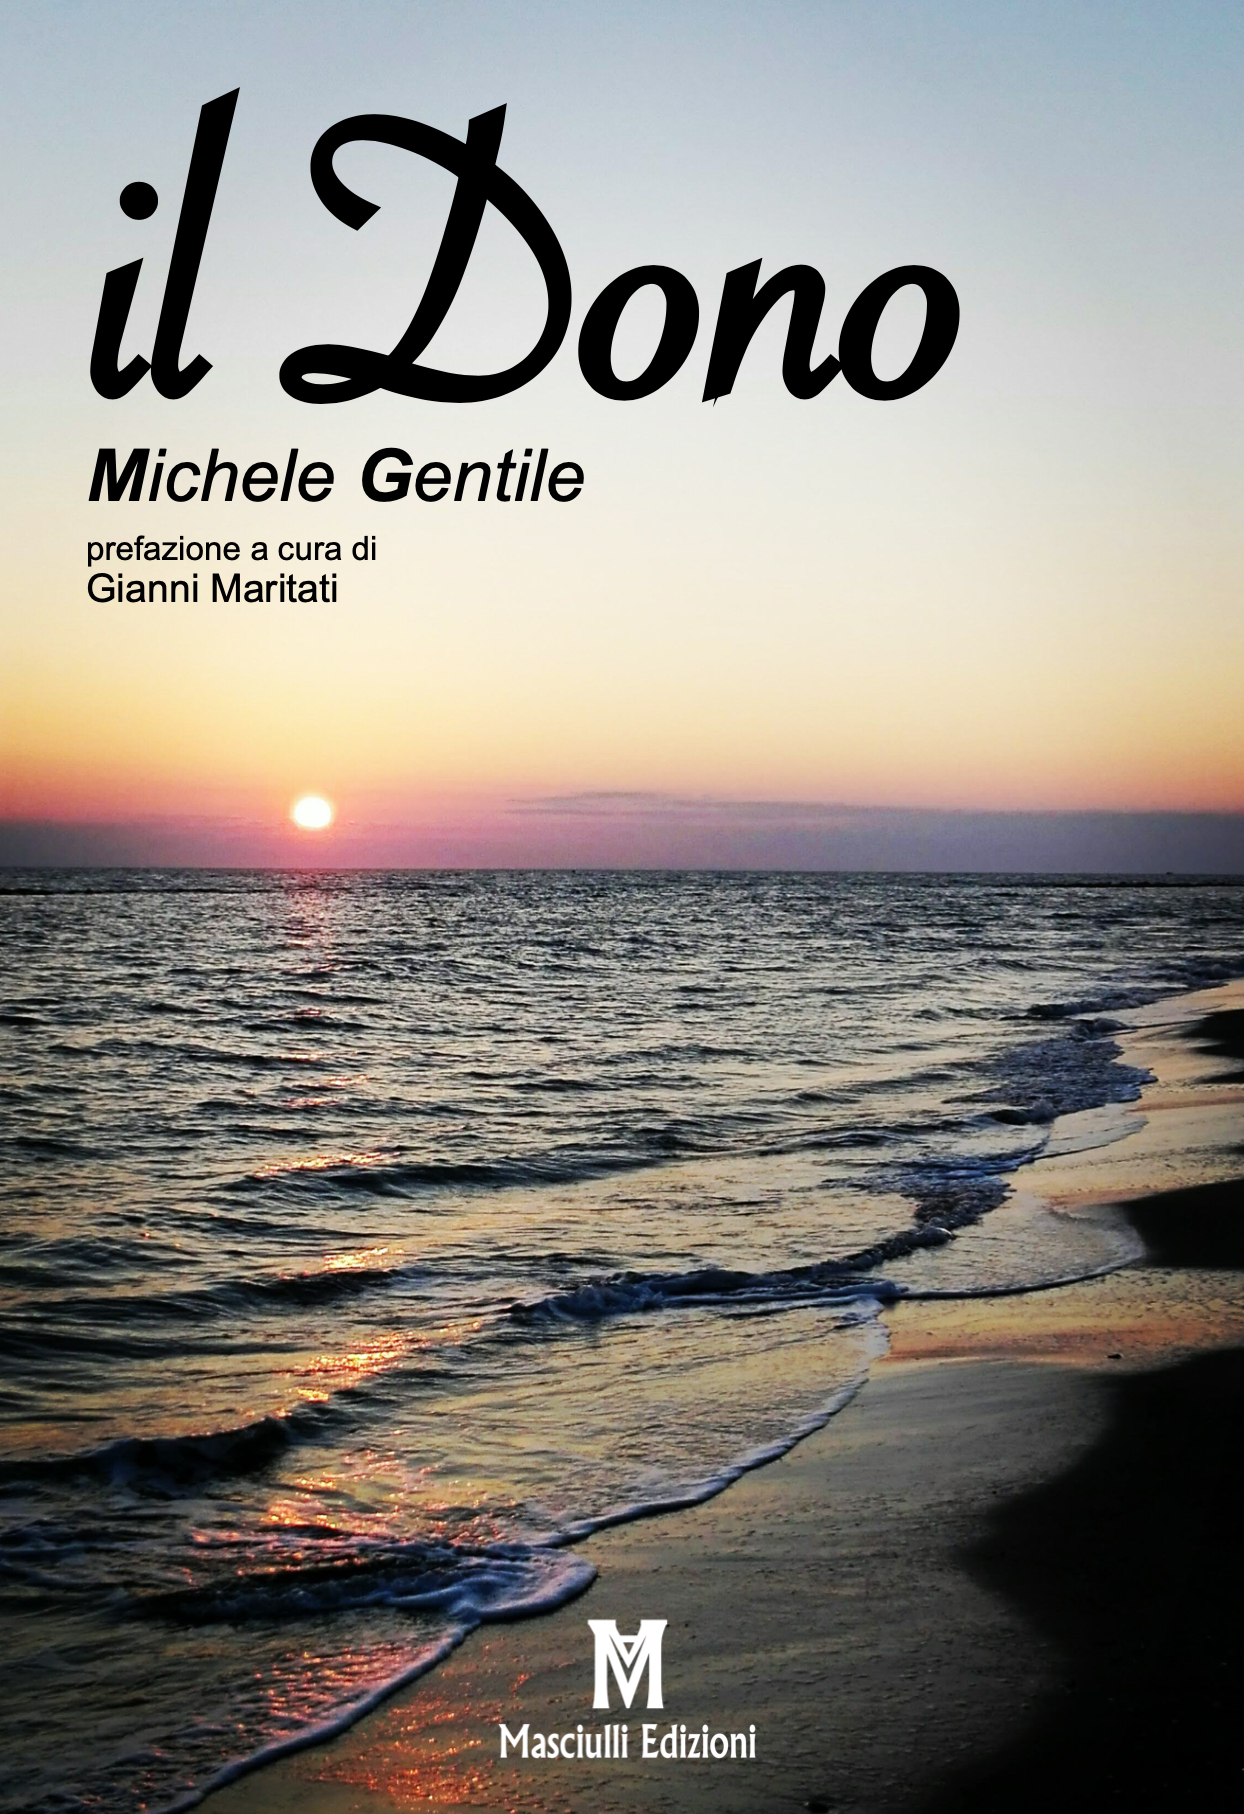 “Il dono” – Michele Gentile